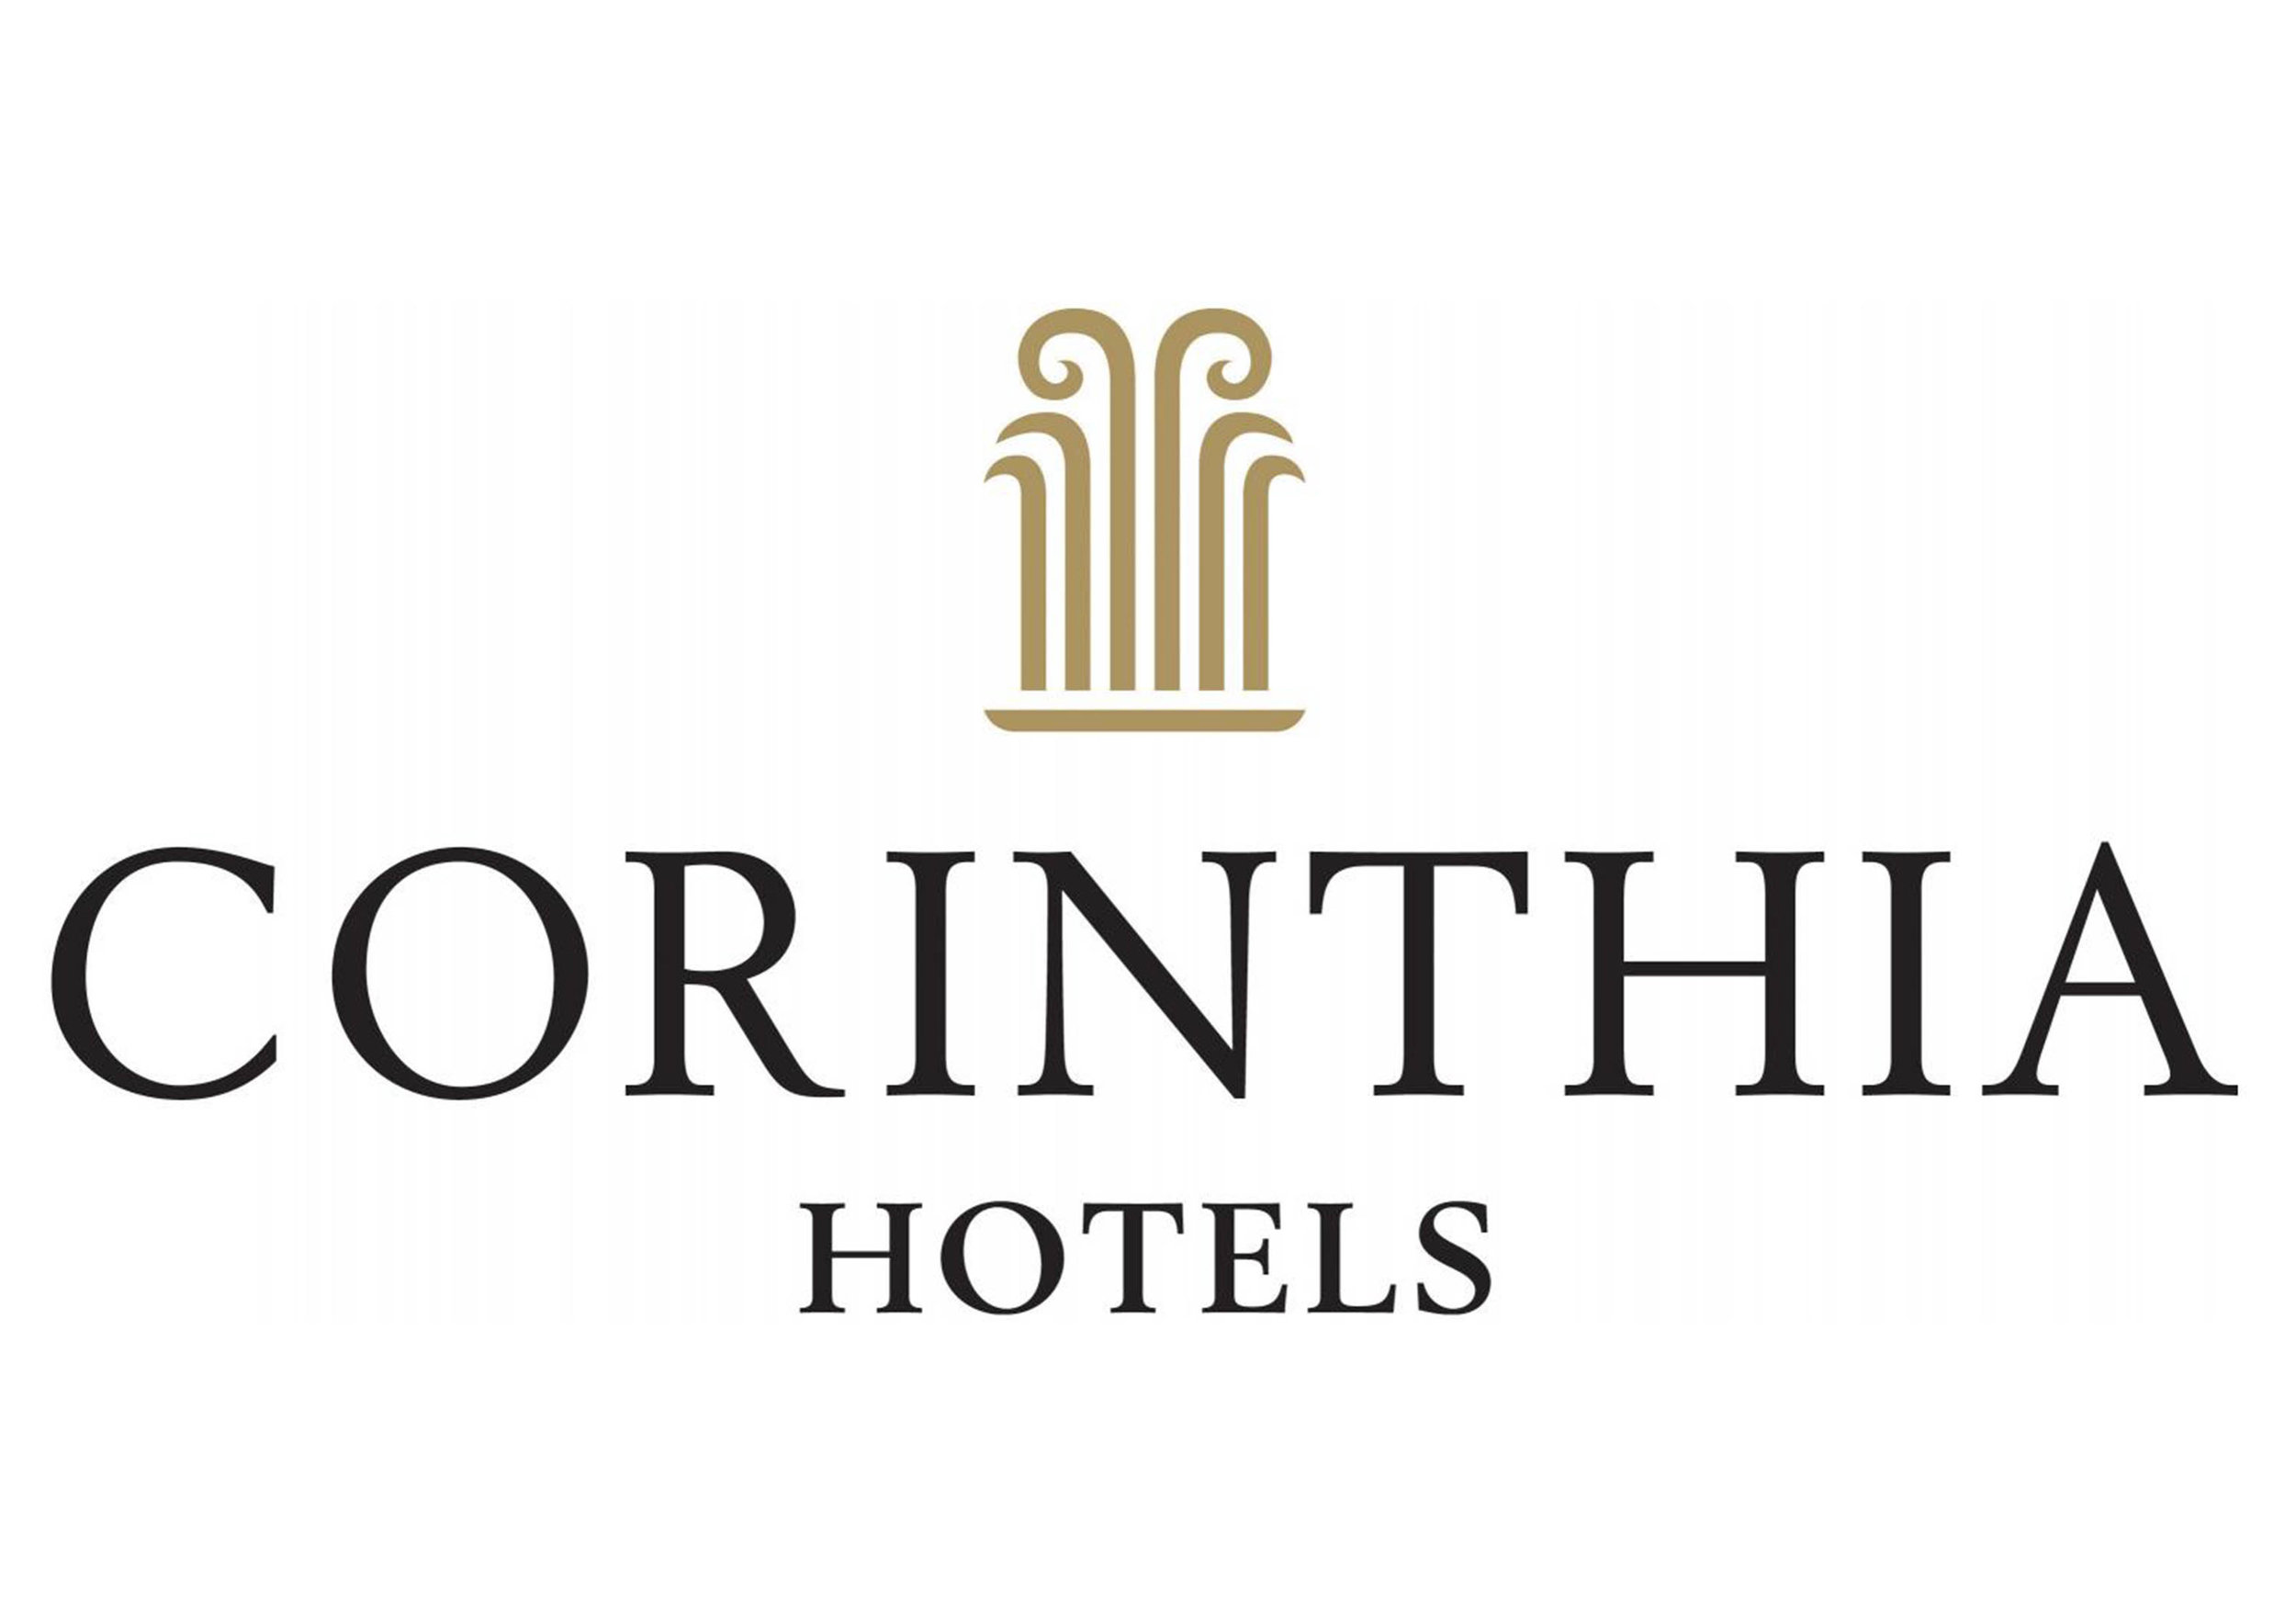 Corinthia Hotels.jpg